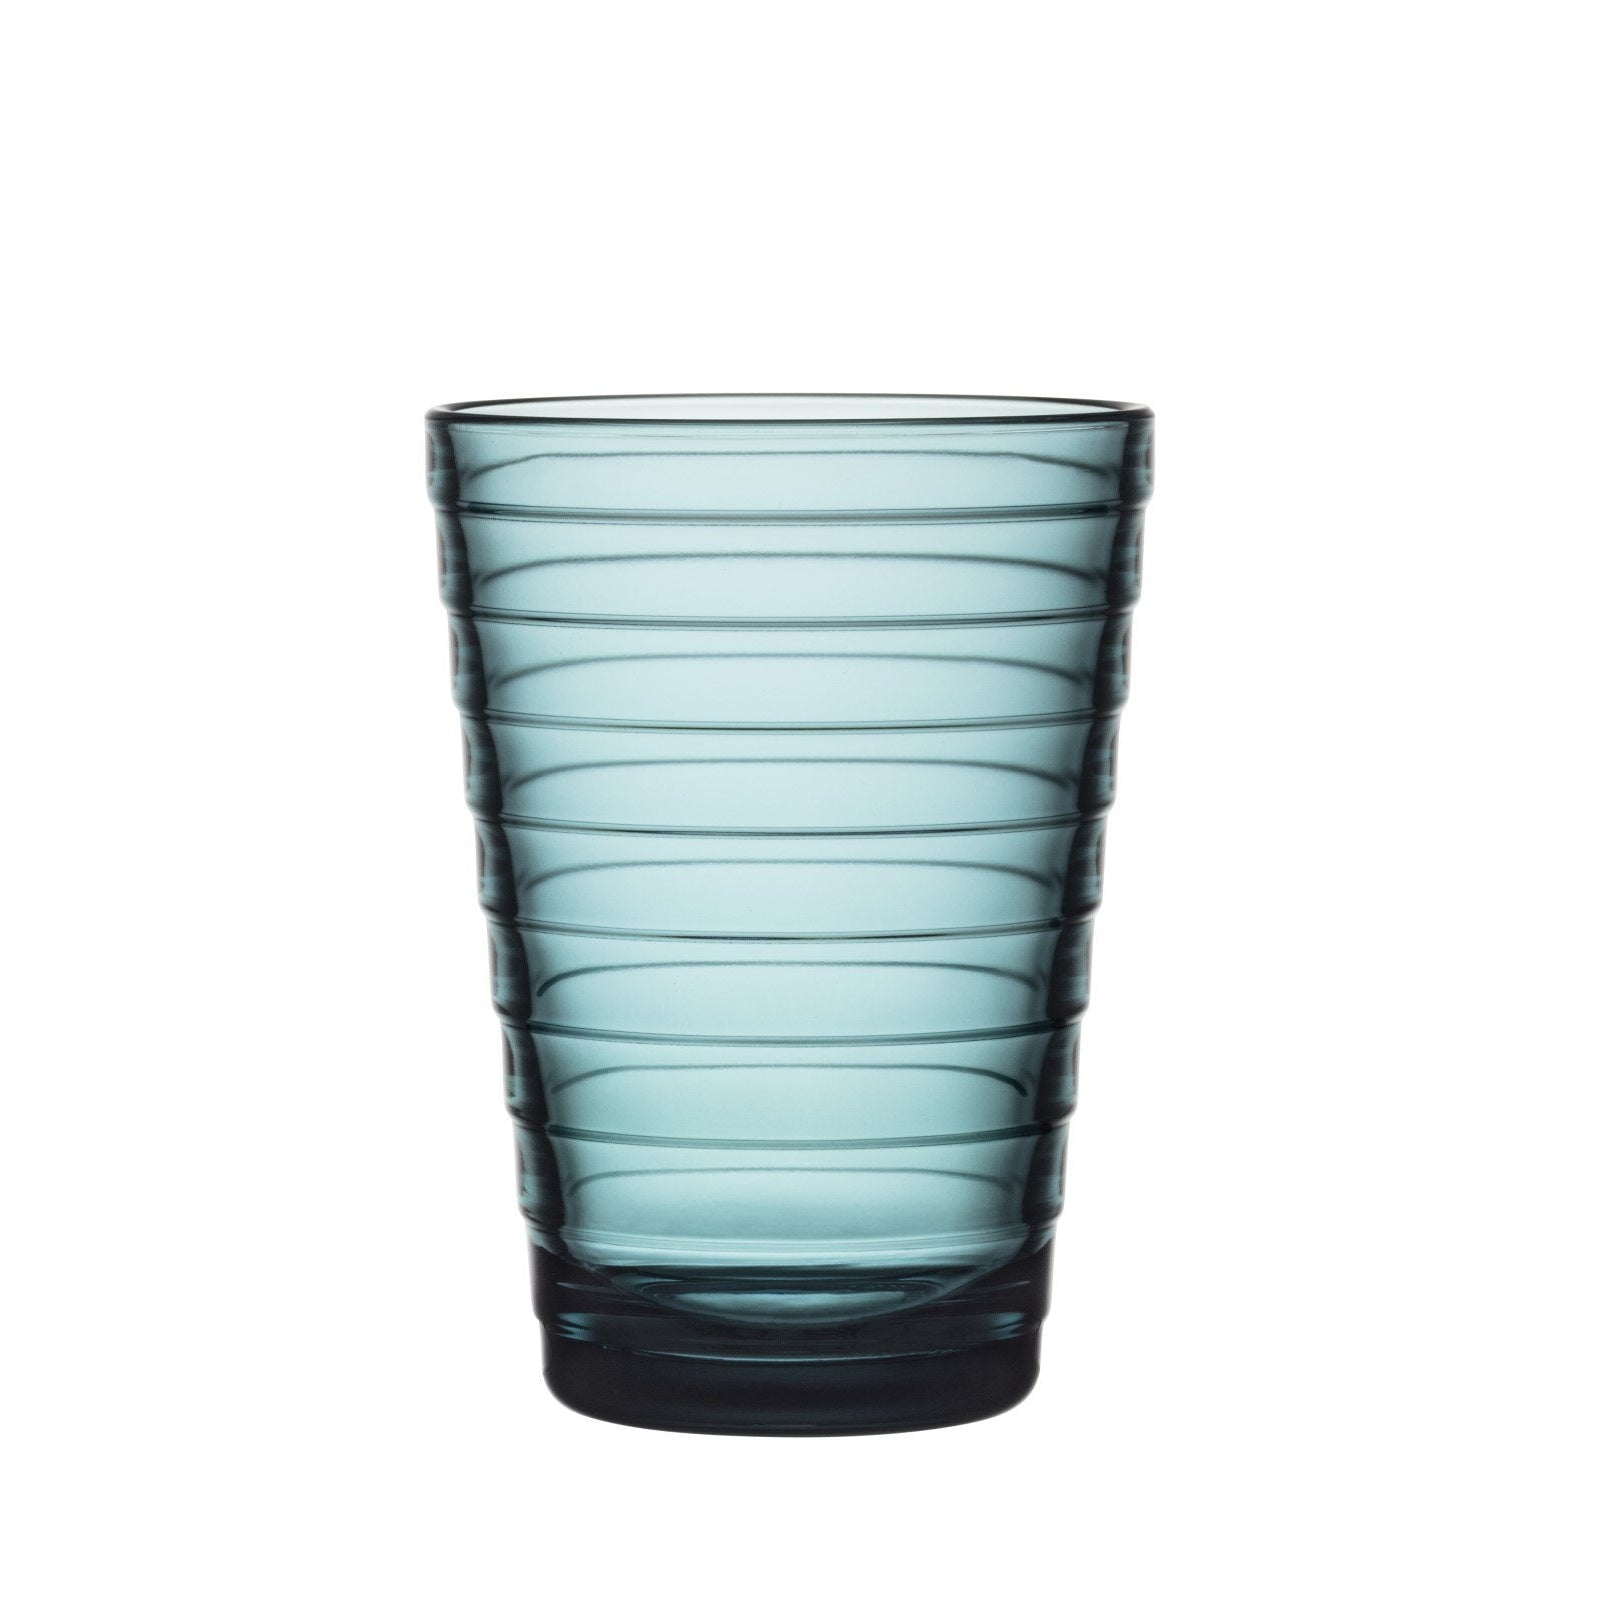 Iittala Aino aalto glas søbel 2 st, 33cl